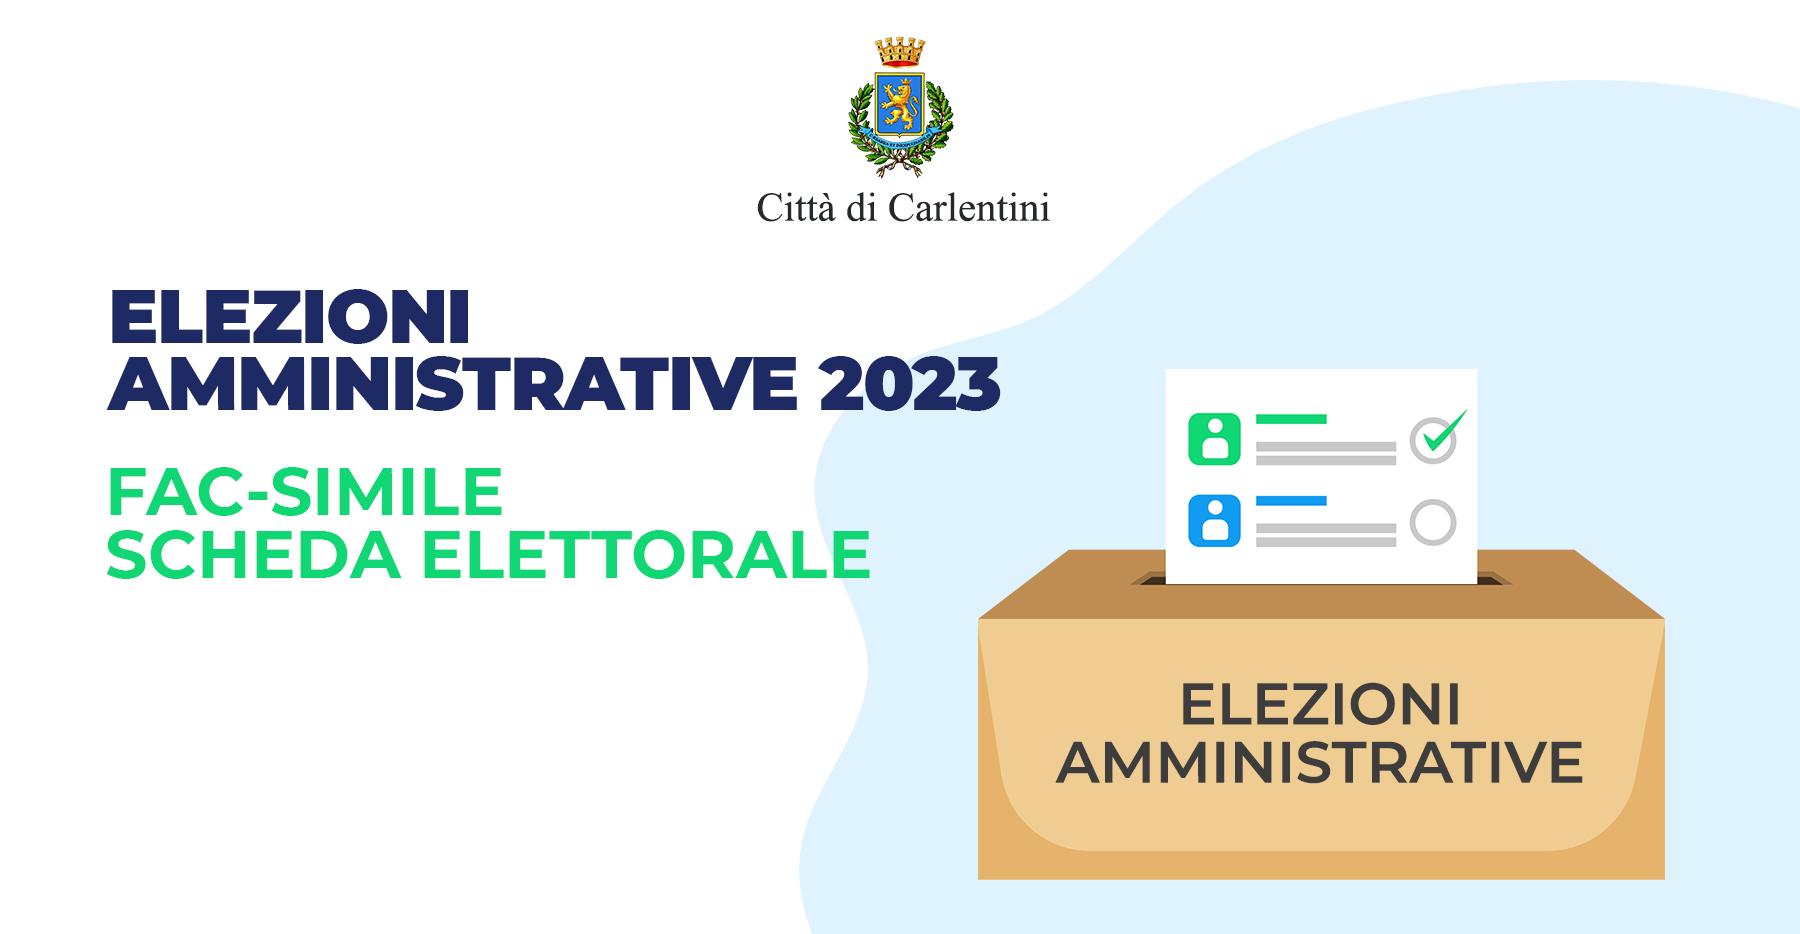 Elezioni Amministrative 2023: fac-simile scheda elettorale